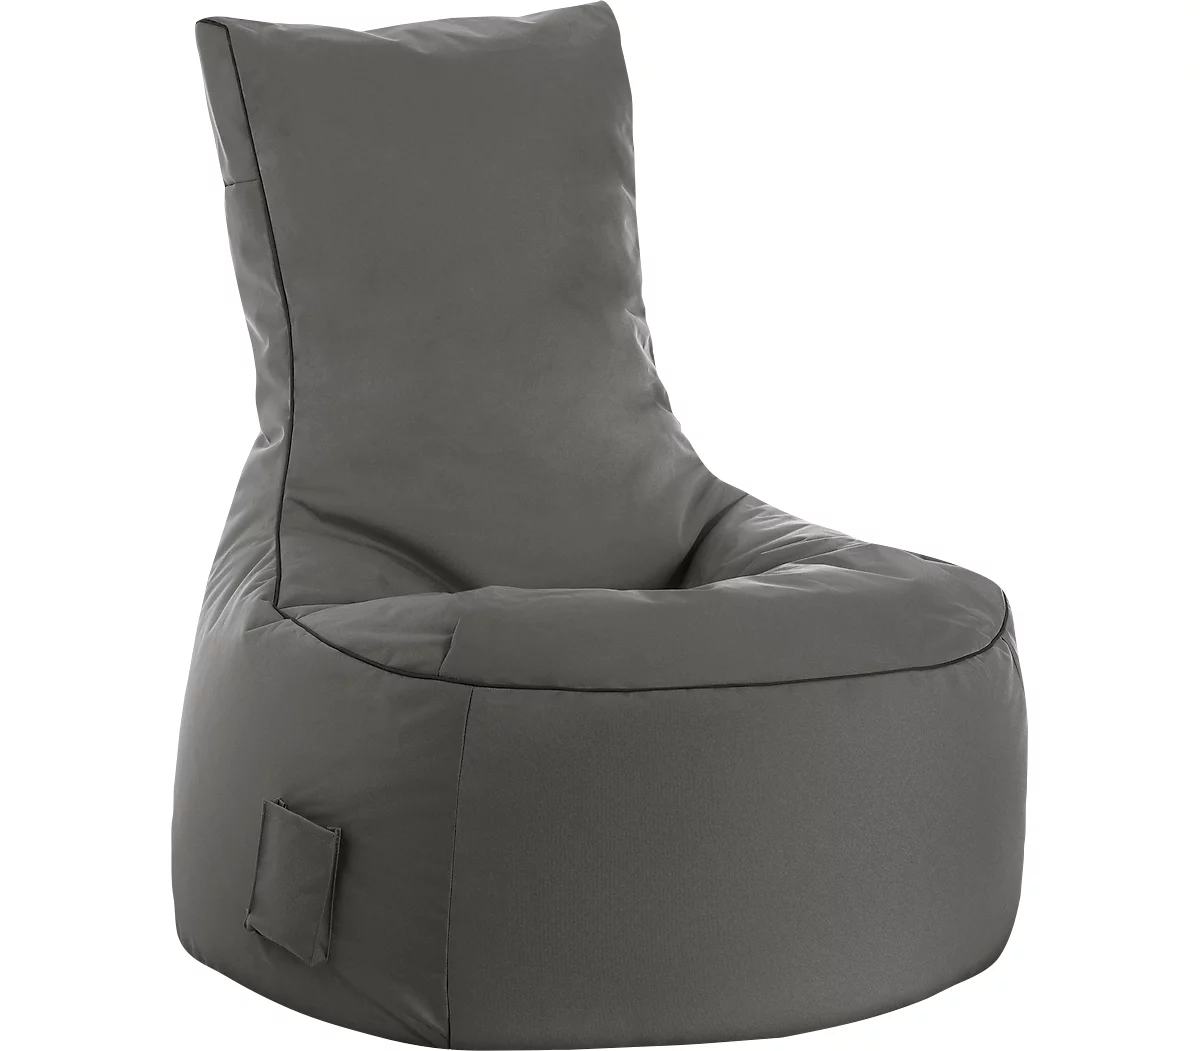 Sitzsack swing scuba®, 100% Polyester, abwaschbar, B 650 x T 900 x H 950 mm, anthrazit